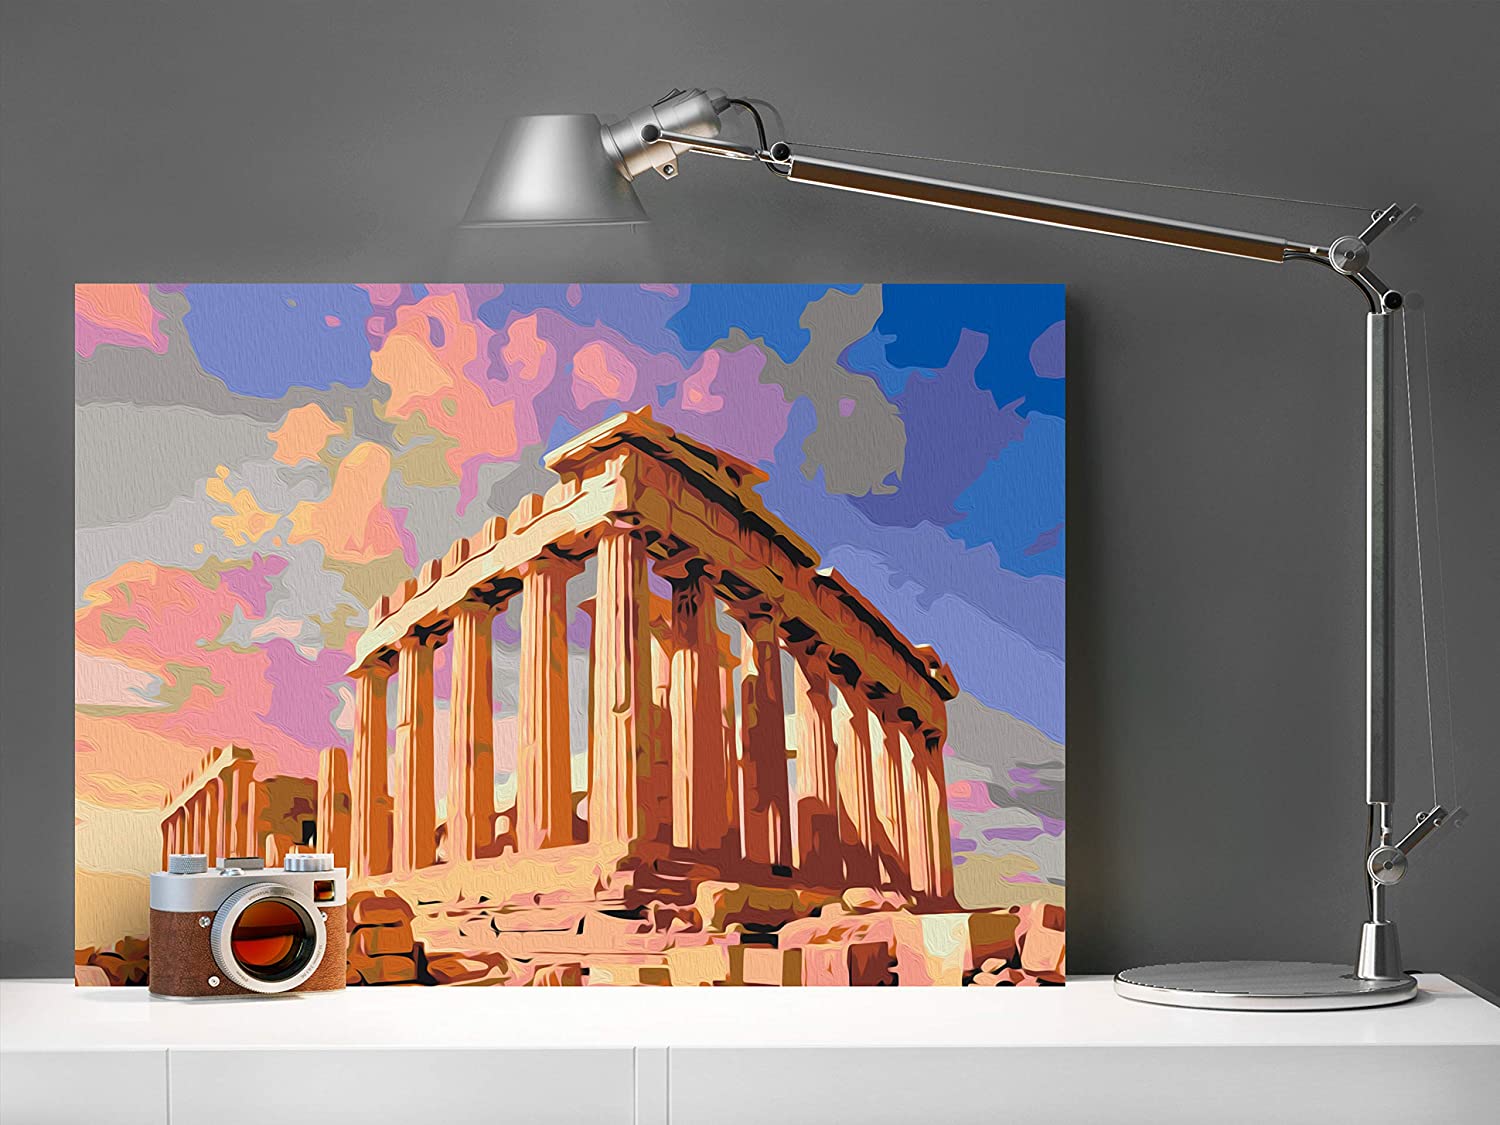 Akropolisz Olaszország - számfestő készlet